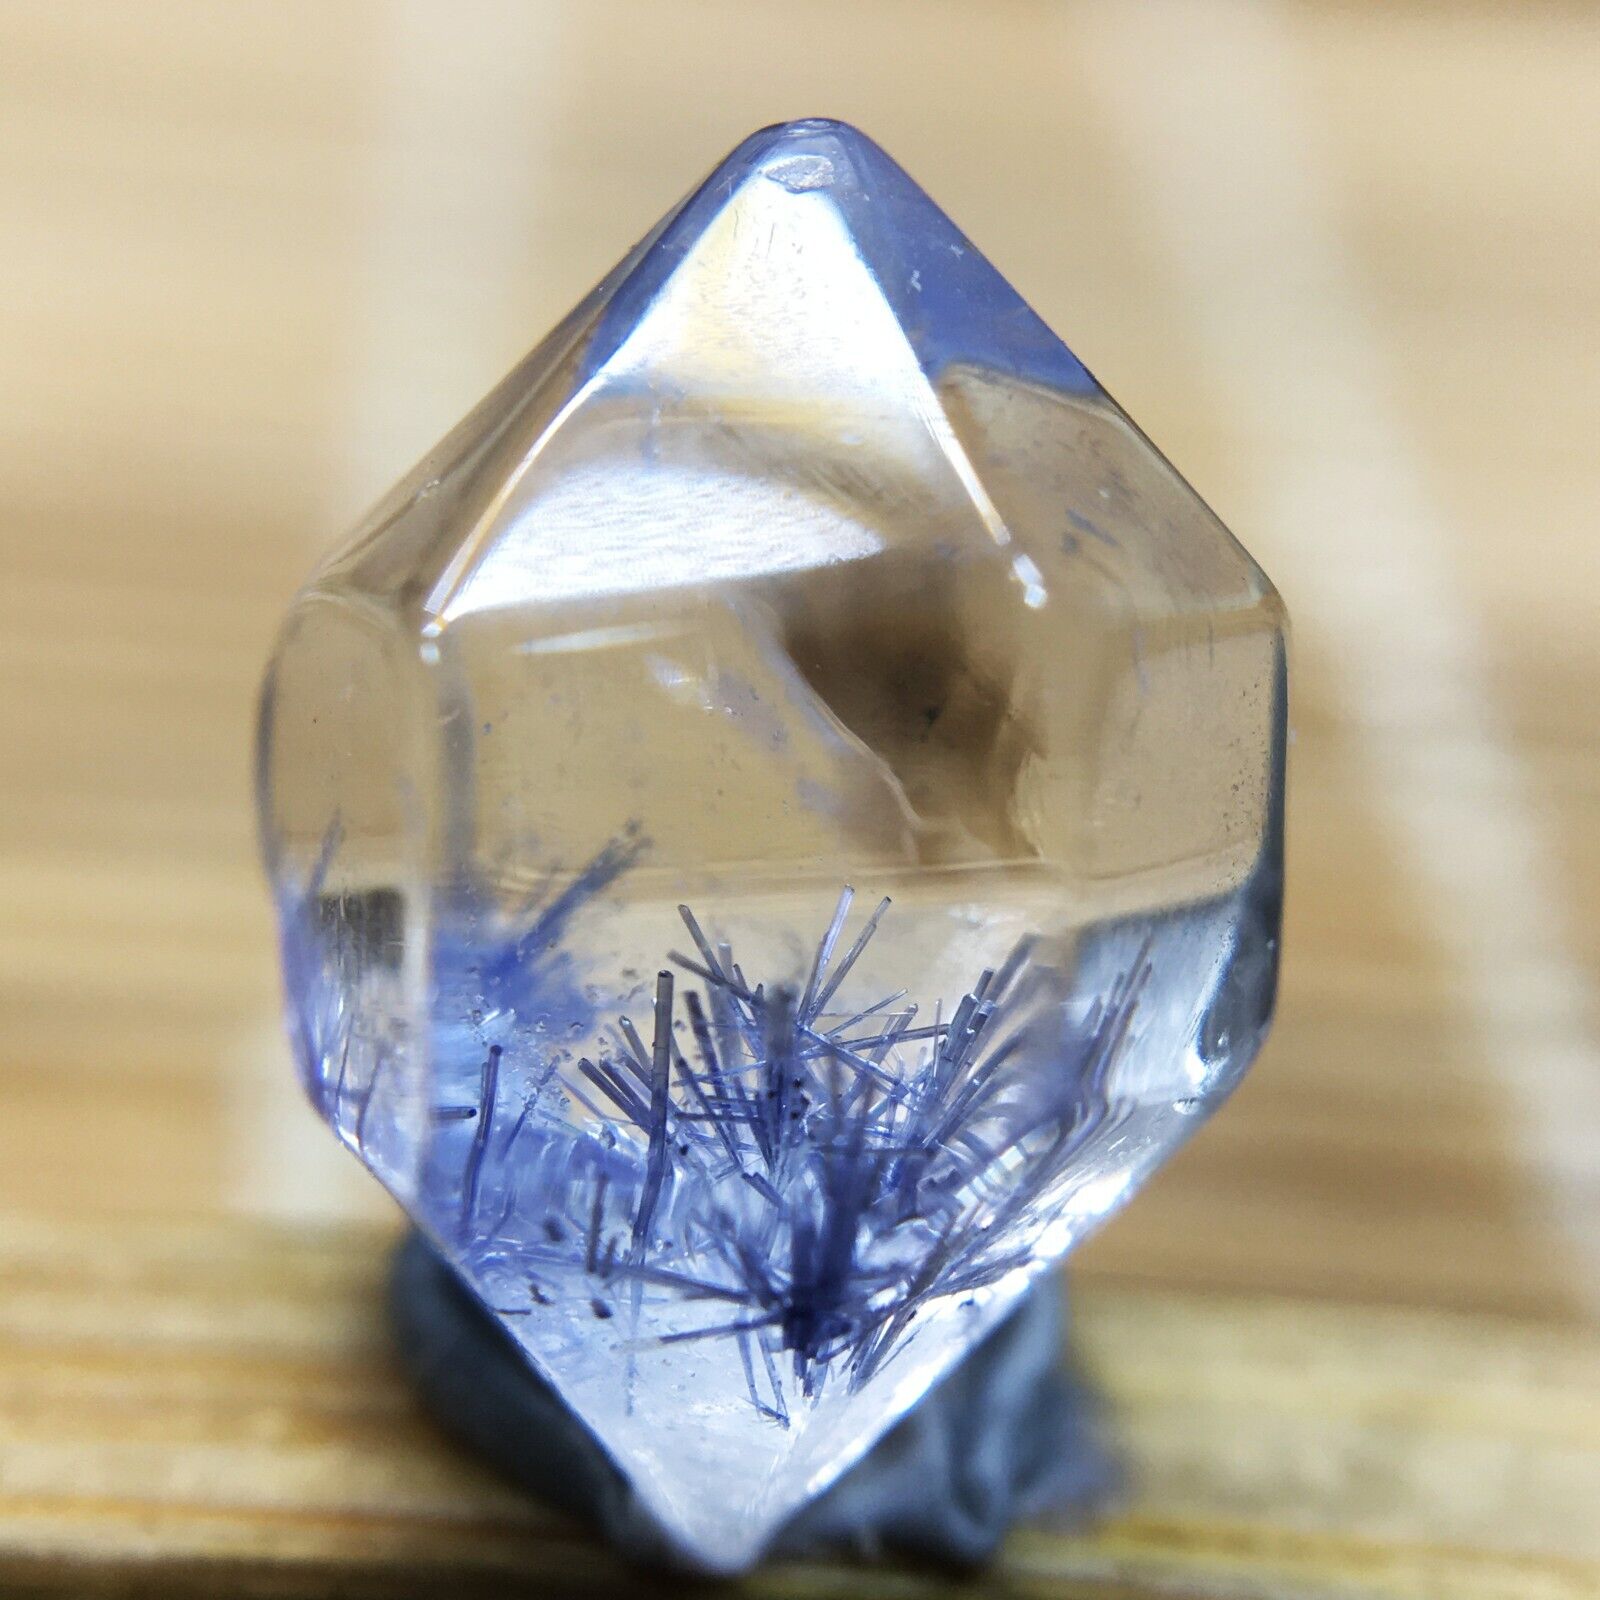 3.9Ct Very Rare NATURAL Beautiful Blue Dumortierite Quartz Crystal Specimen